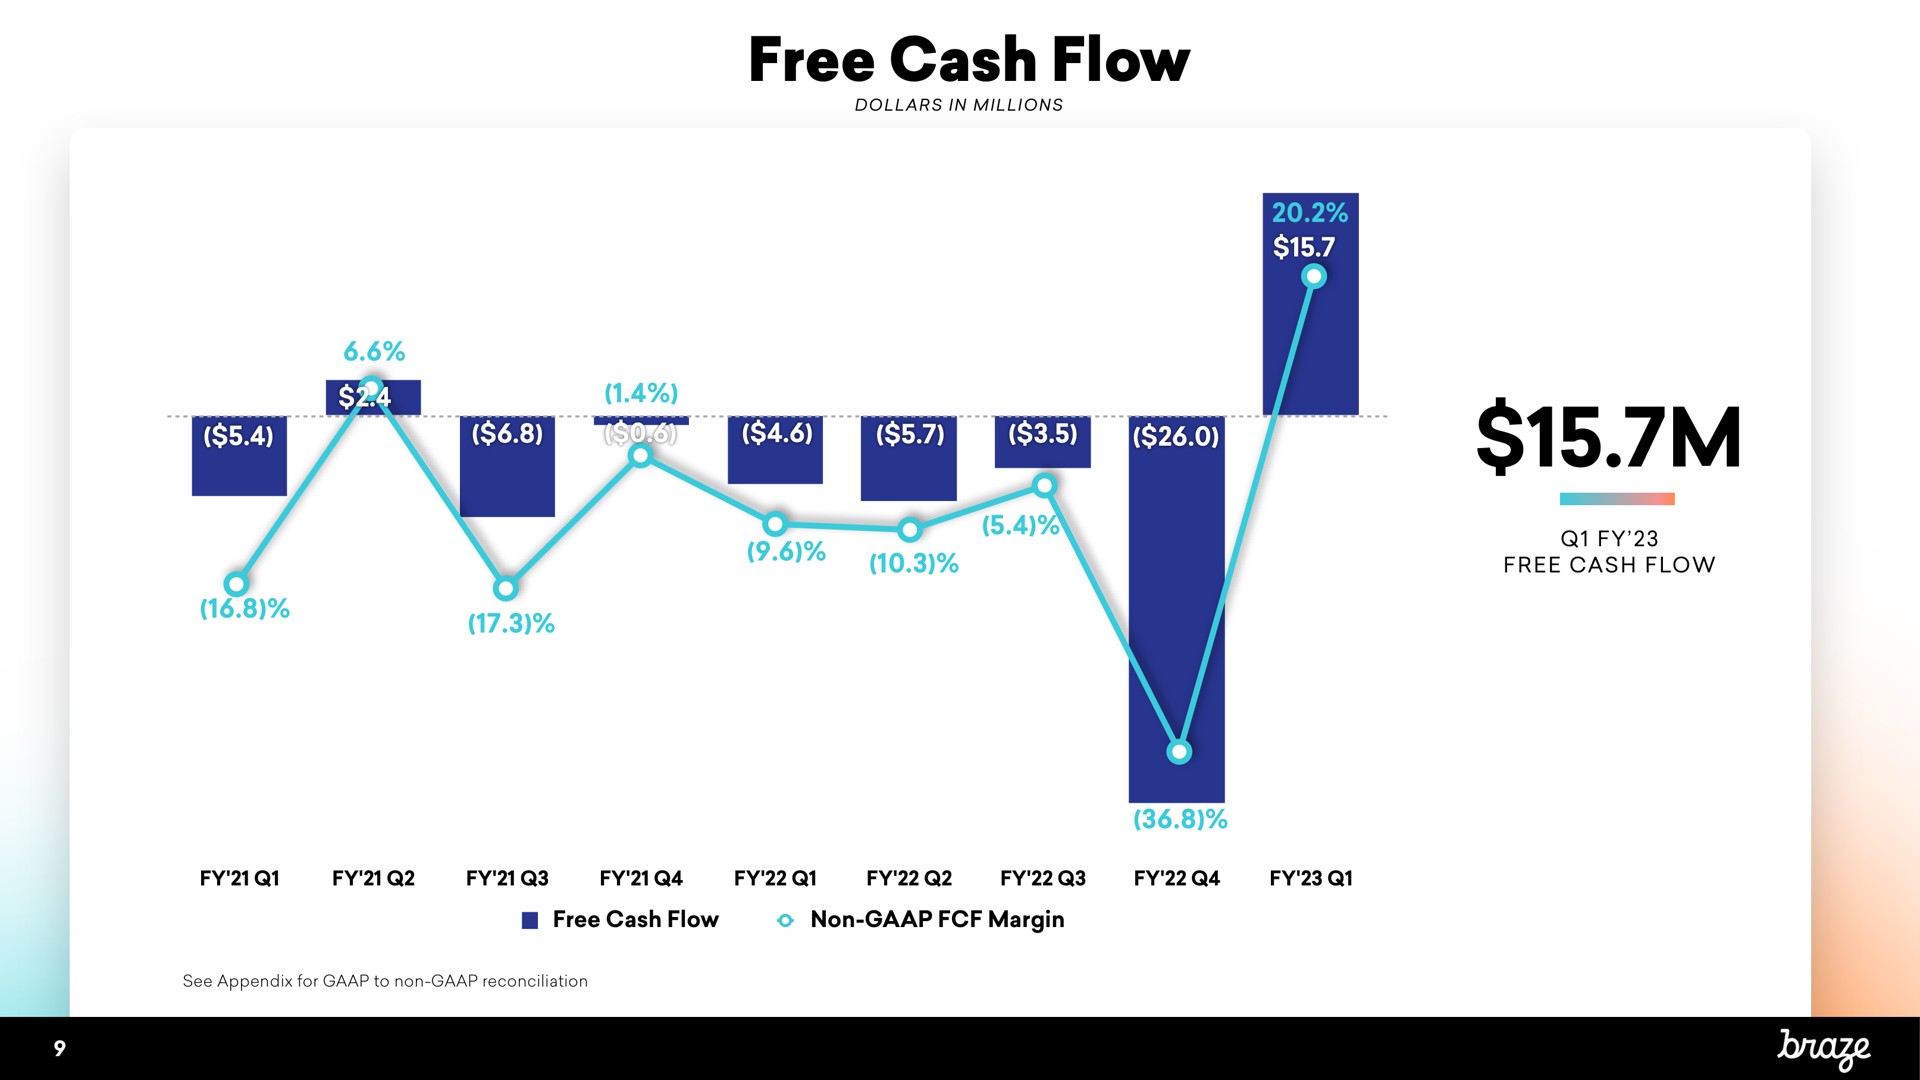 free cash flow bam a | Braze